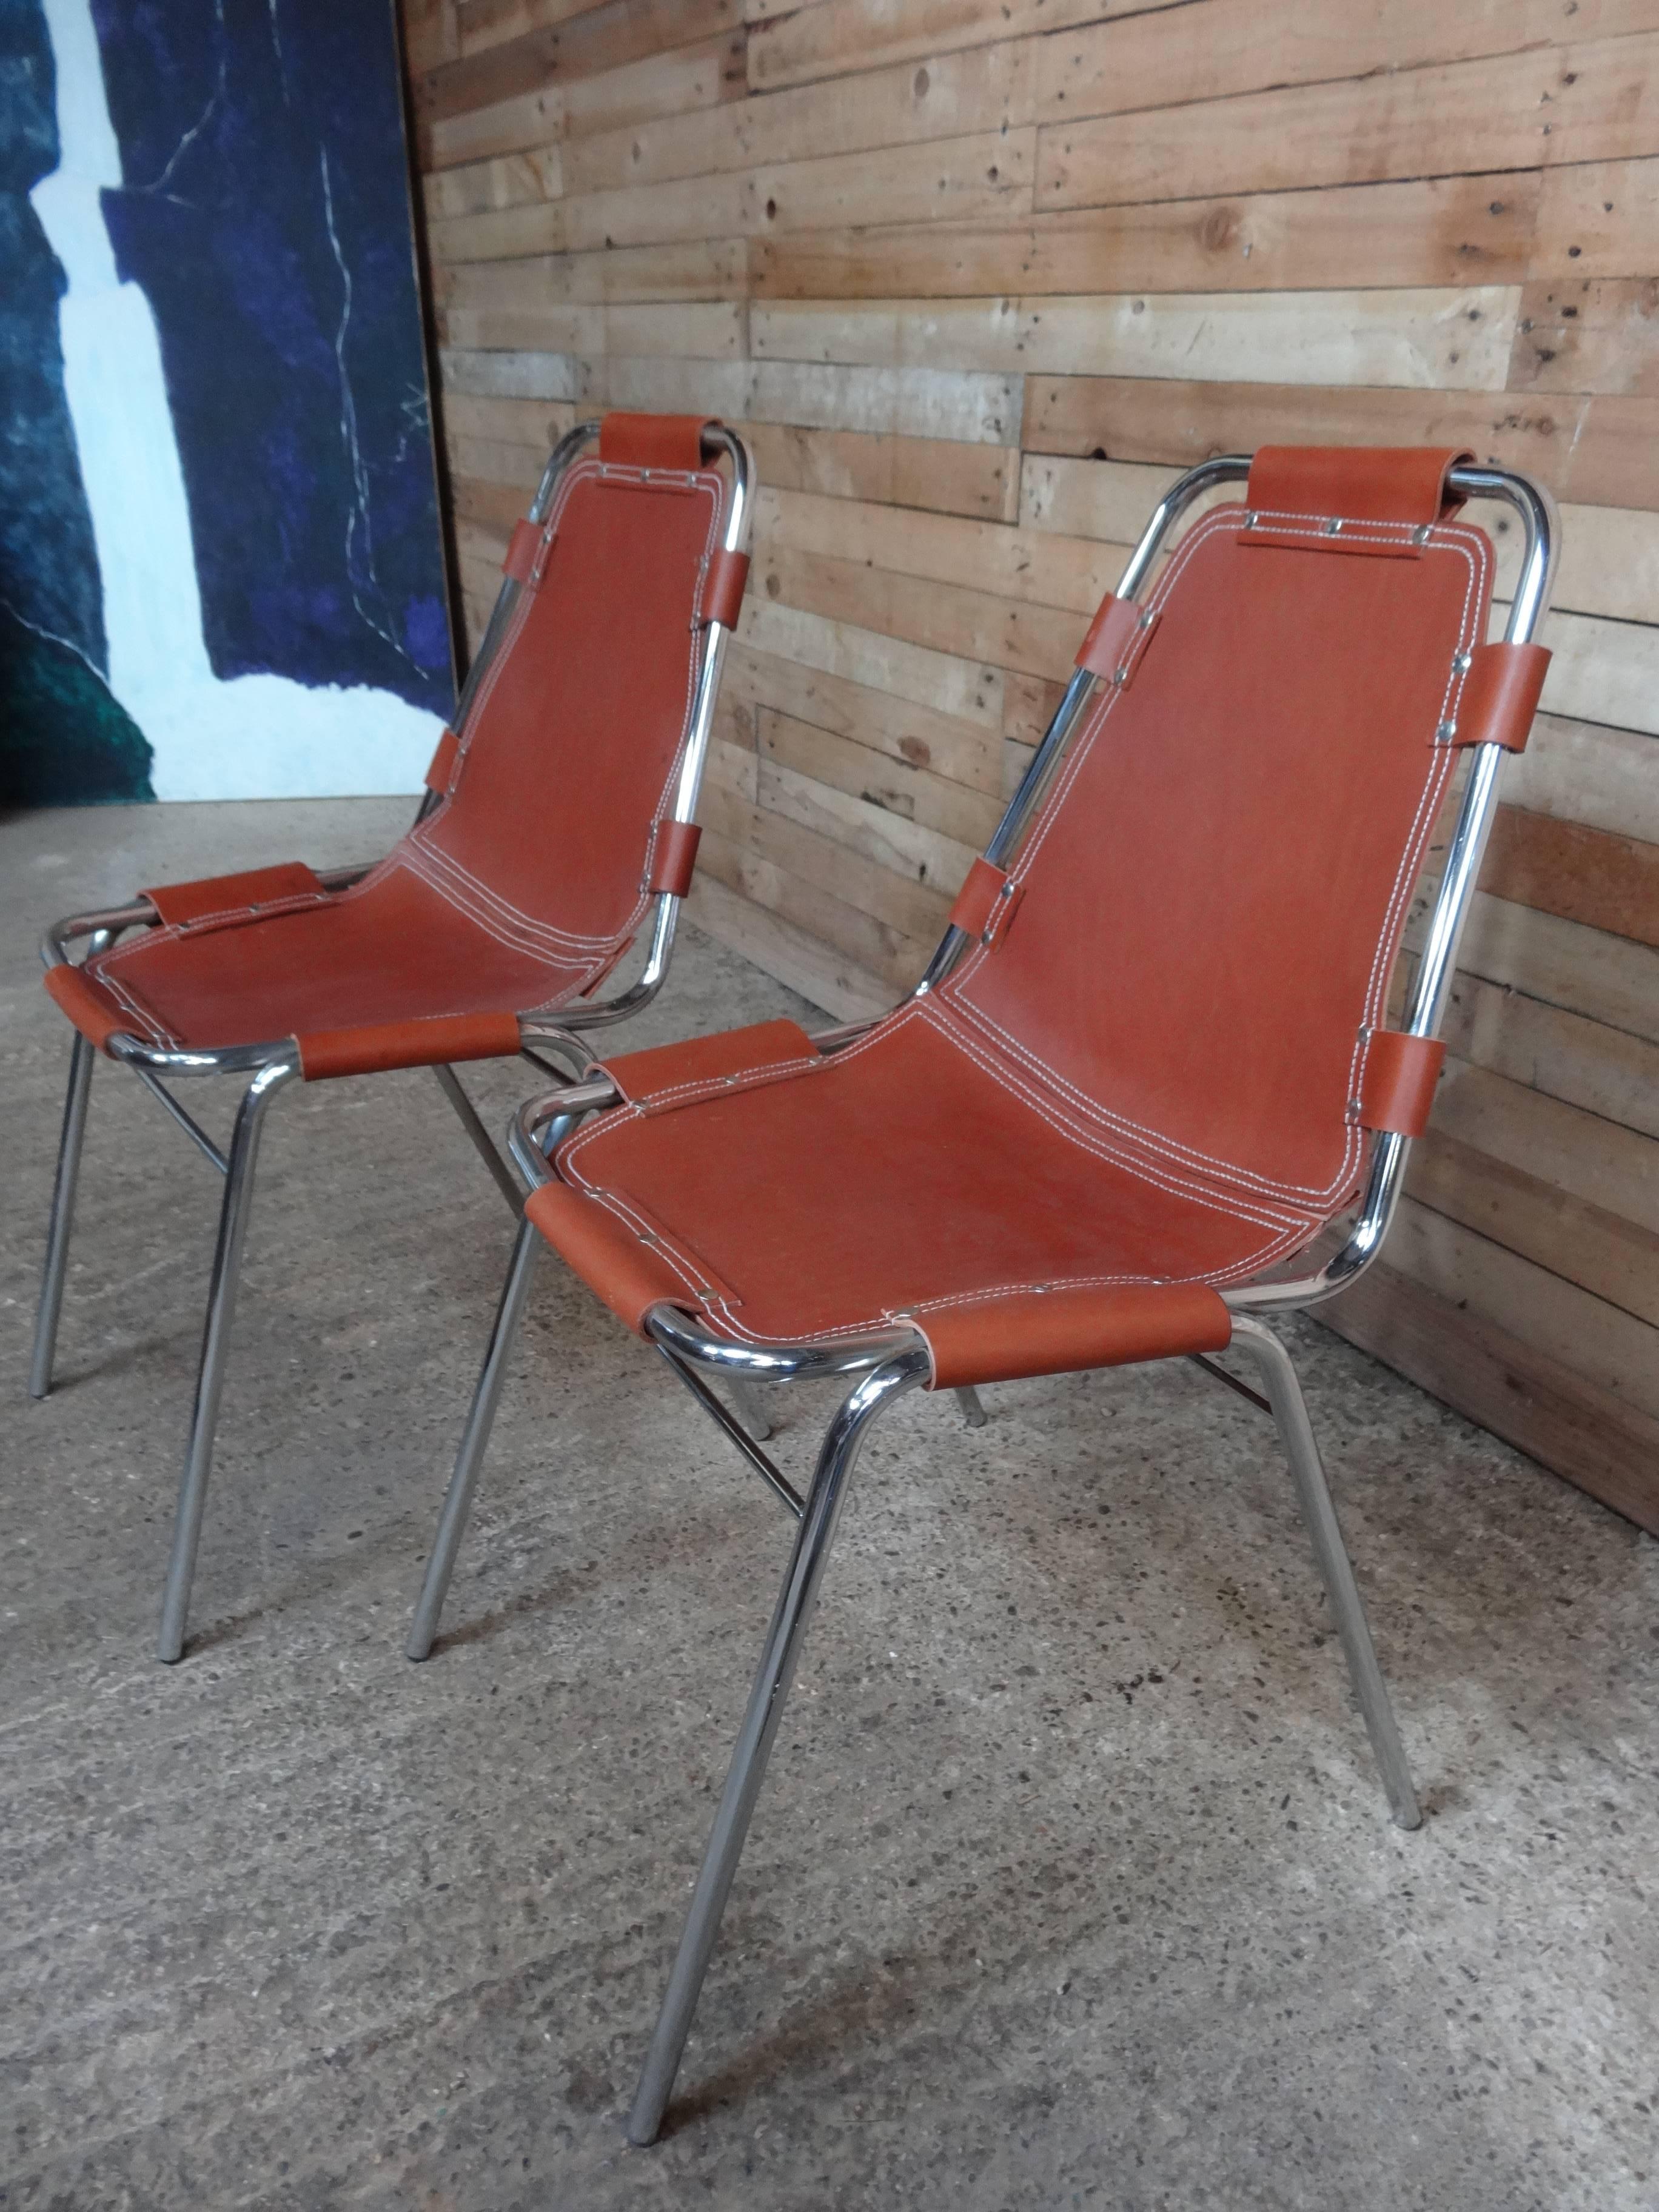 resort chairs